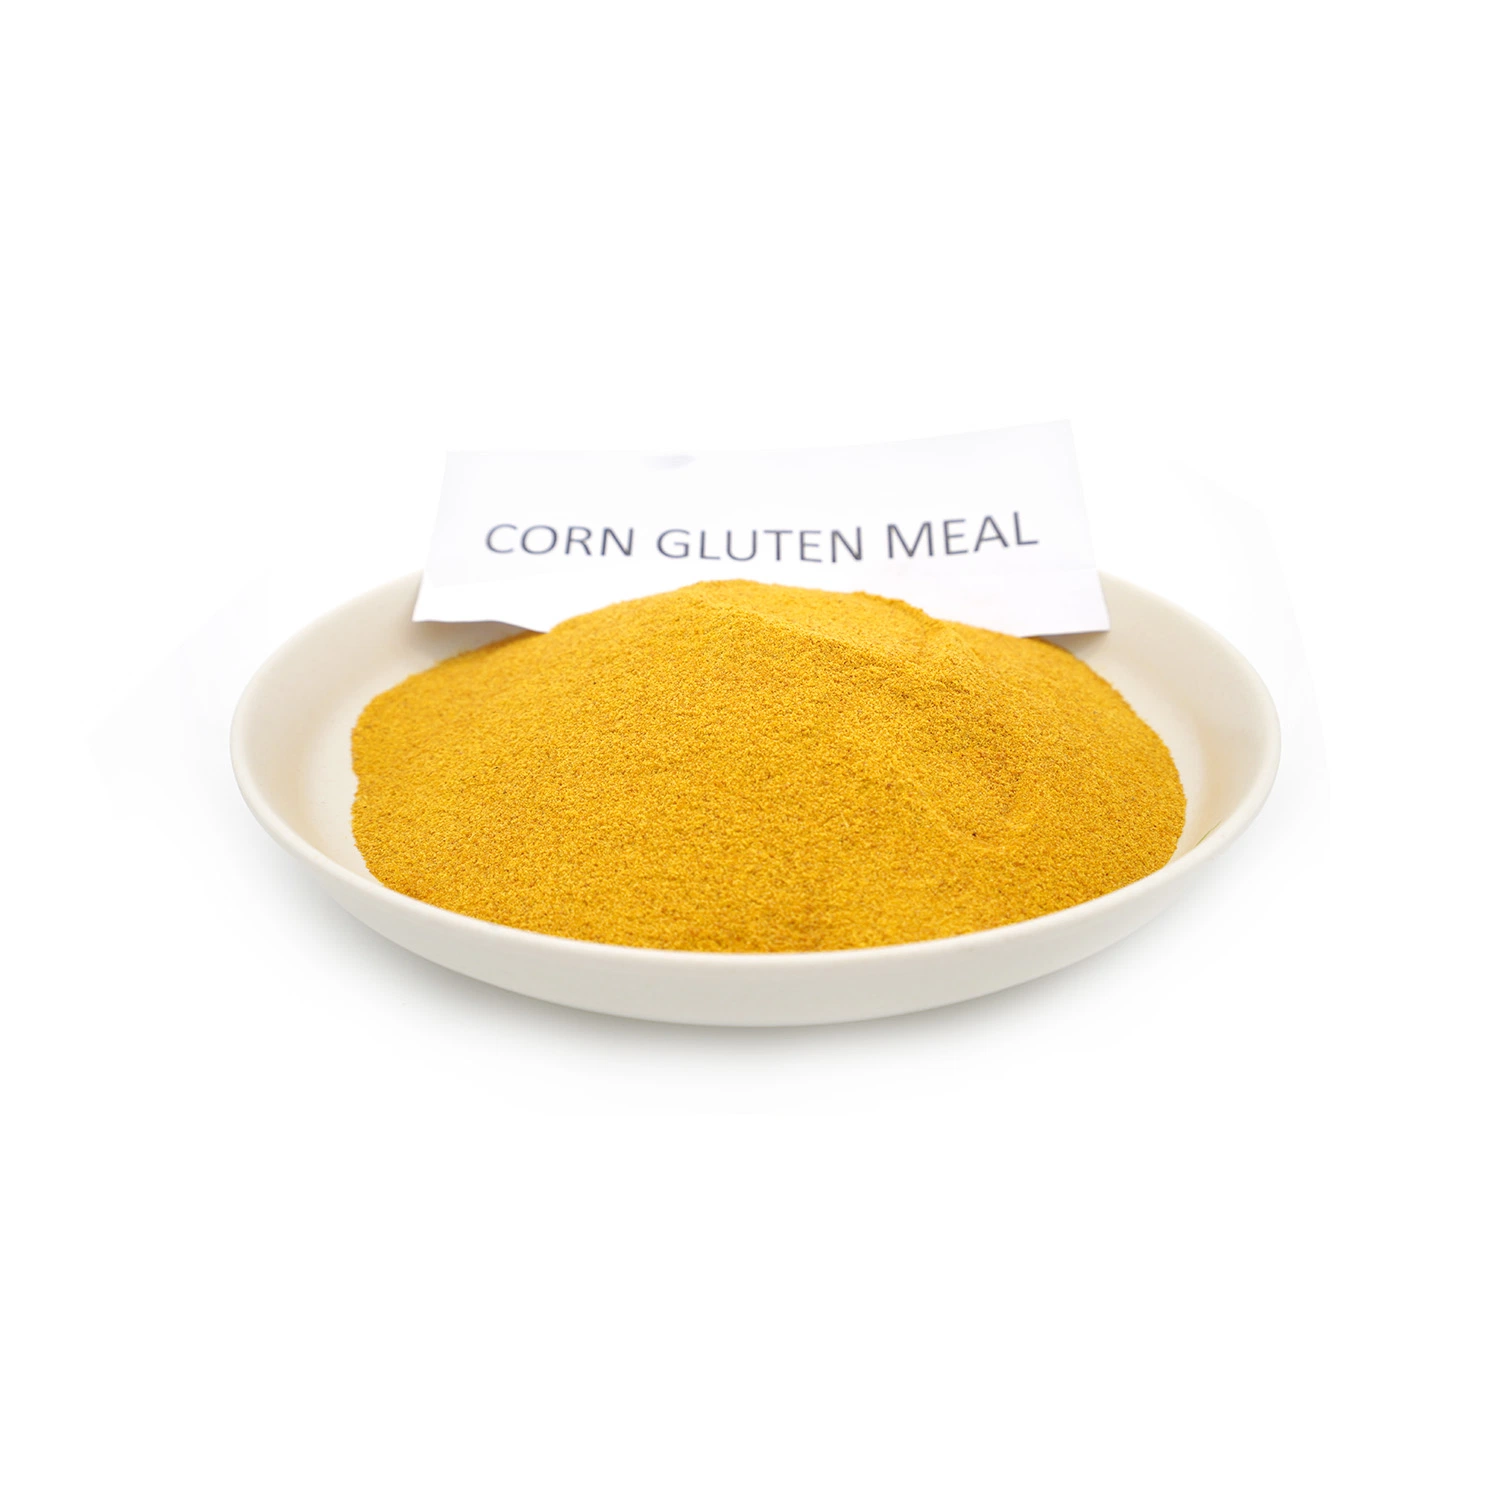 وجبة طعام صفراء من نوع كورن جلوتن 60% مسحوق البروتين